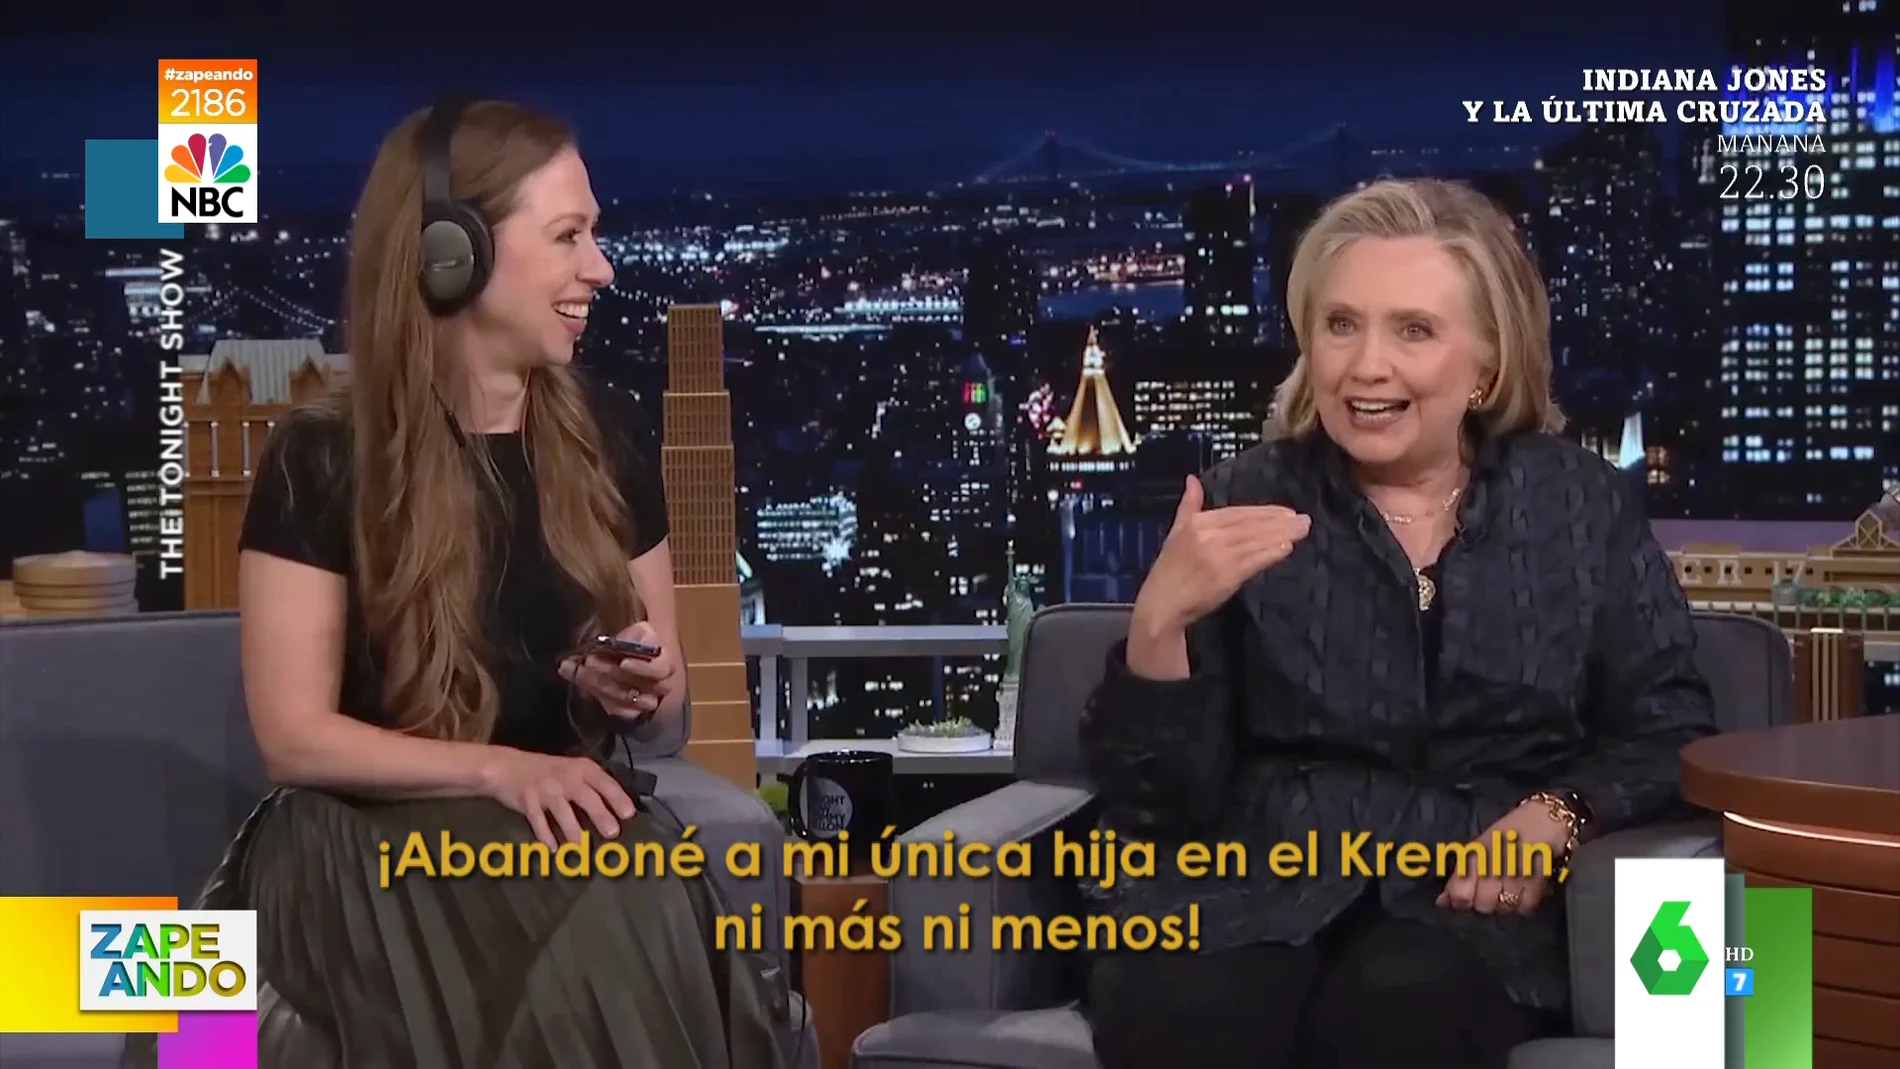 Hillary Clinton cuenta cómo abandonaron a su hija sin querer en Rusia cuando Bill Clinton era presidente de EEUU